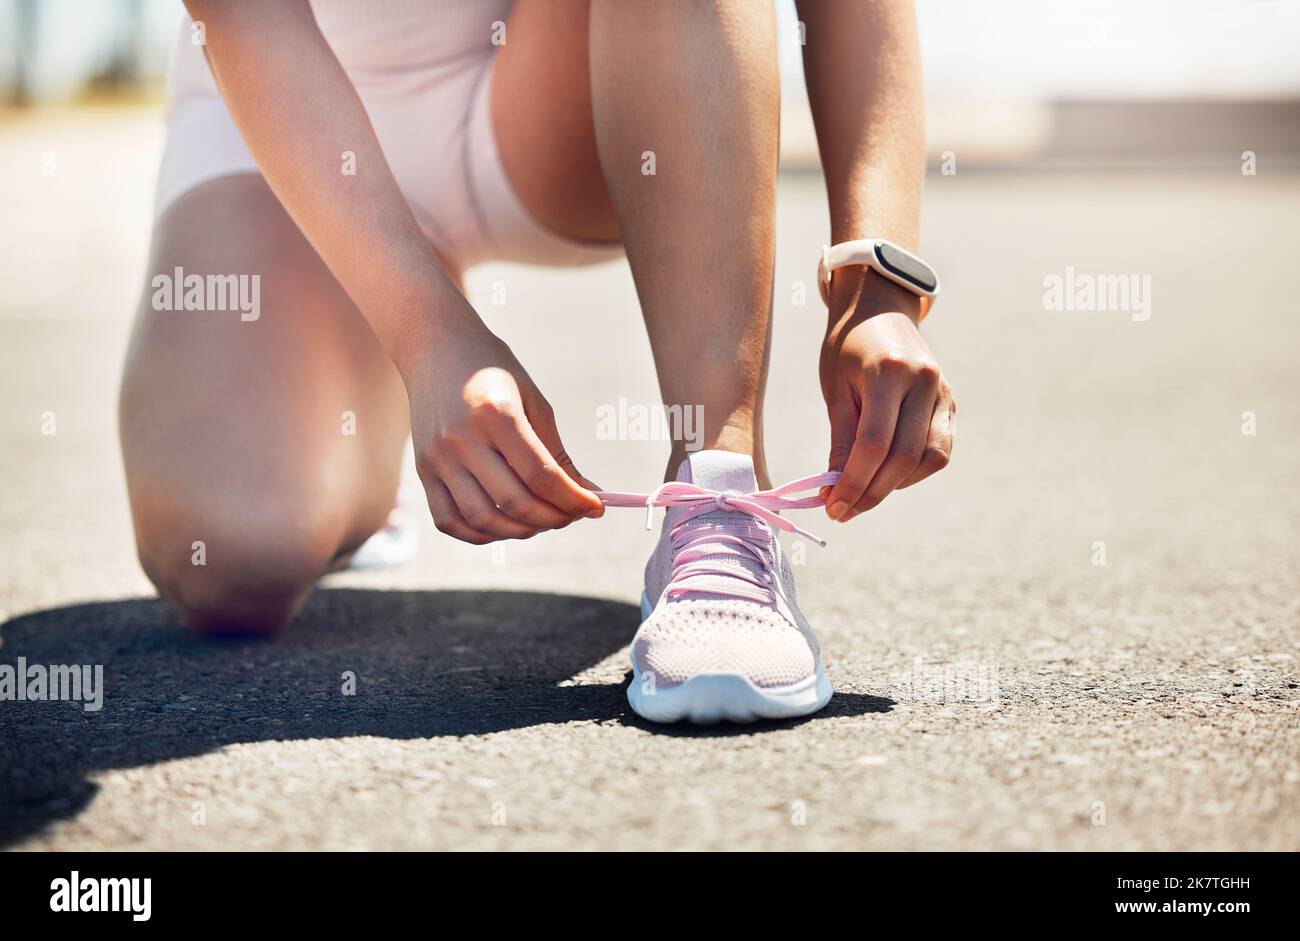 Fitness, Bewegung und Schuhe mit einer Sportlerin, die ihre Schnürsenkel festbindet, während sie auf einer asphaltierten Straße oder Straße läuft. Training, Training und Cardio mit einer Frau Stockfoto